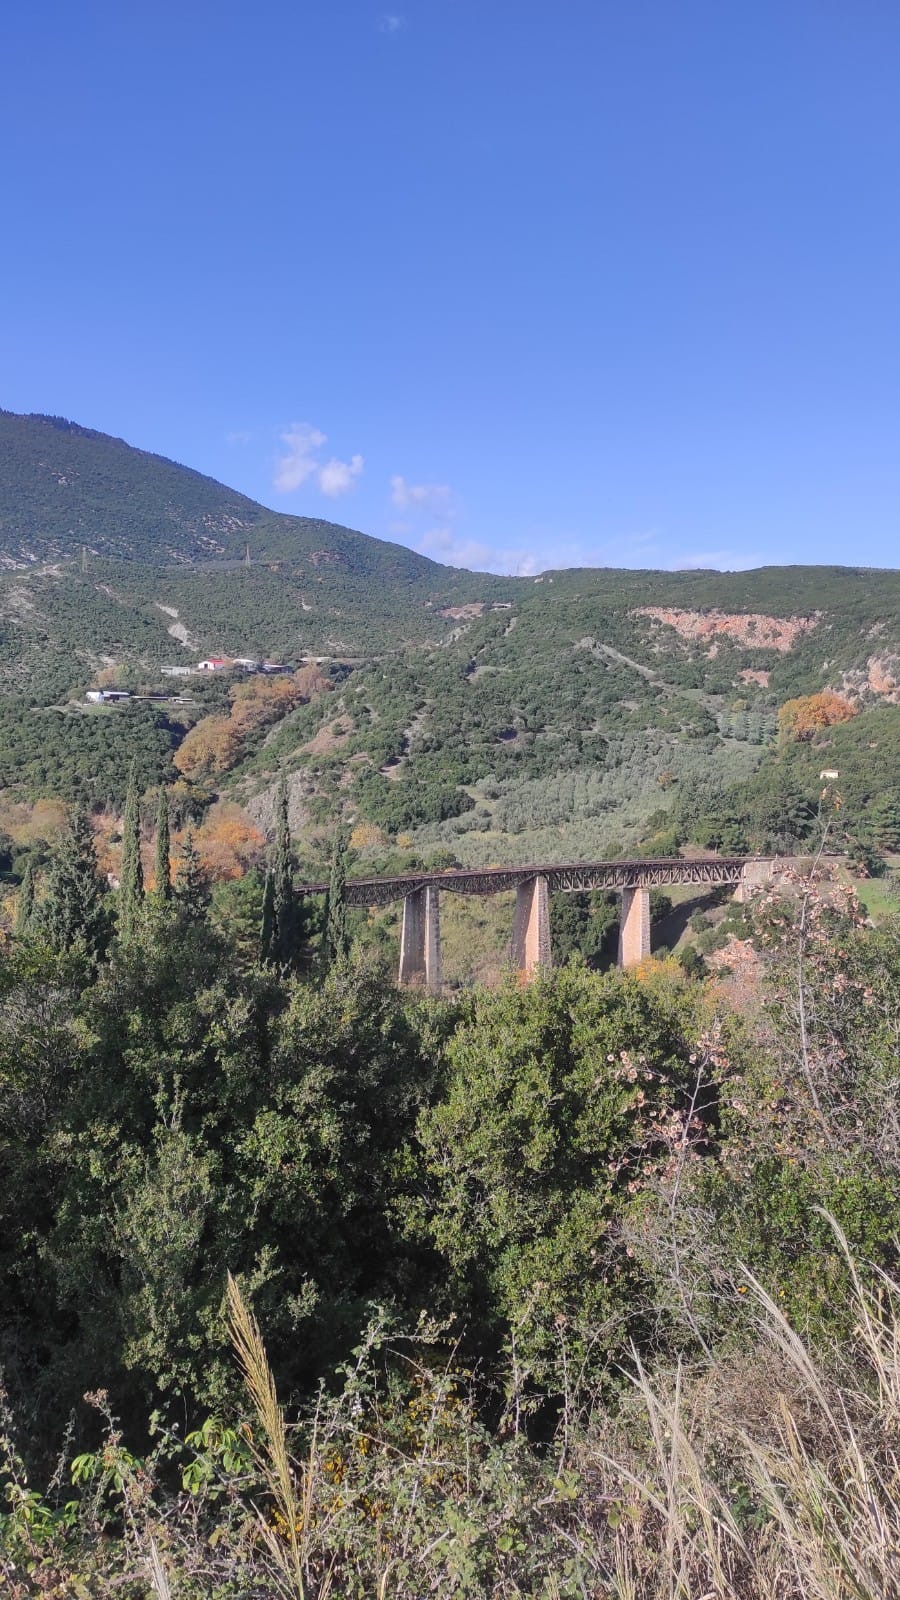 Σπανός για την 79η επέτειο της Γέφυρας του Γοργοποτάμου: Τιμούμε μία από τις κορυφαίες στιγμές της ελληνικής Αντίστασης